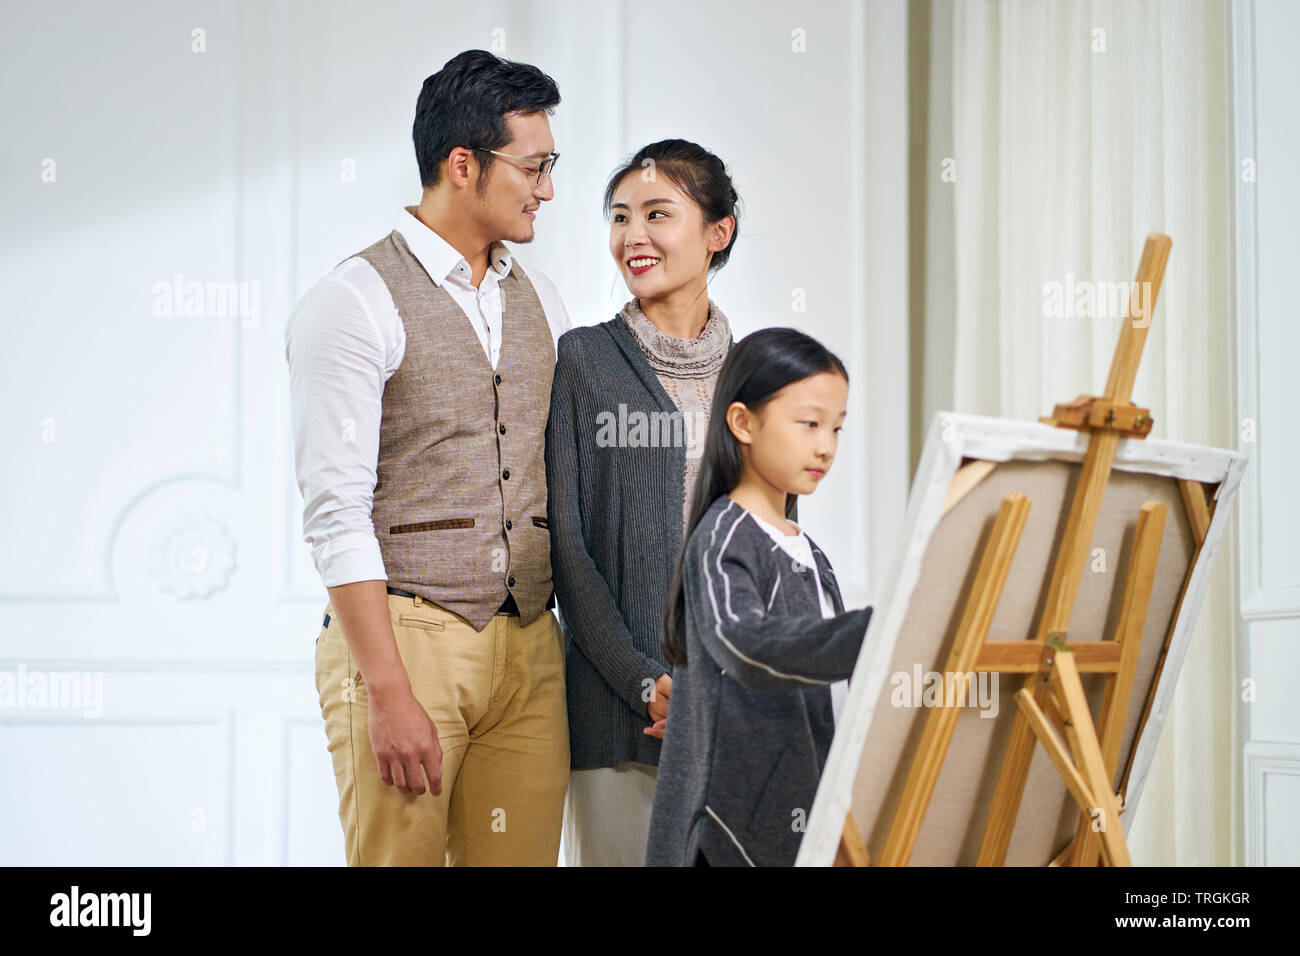 Bonita chica asiática con largo cabello negro haciendo una pintura sobre lienzo mientras los padres de pie detrás mirando, se centran en los padres. Foto de stock